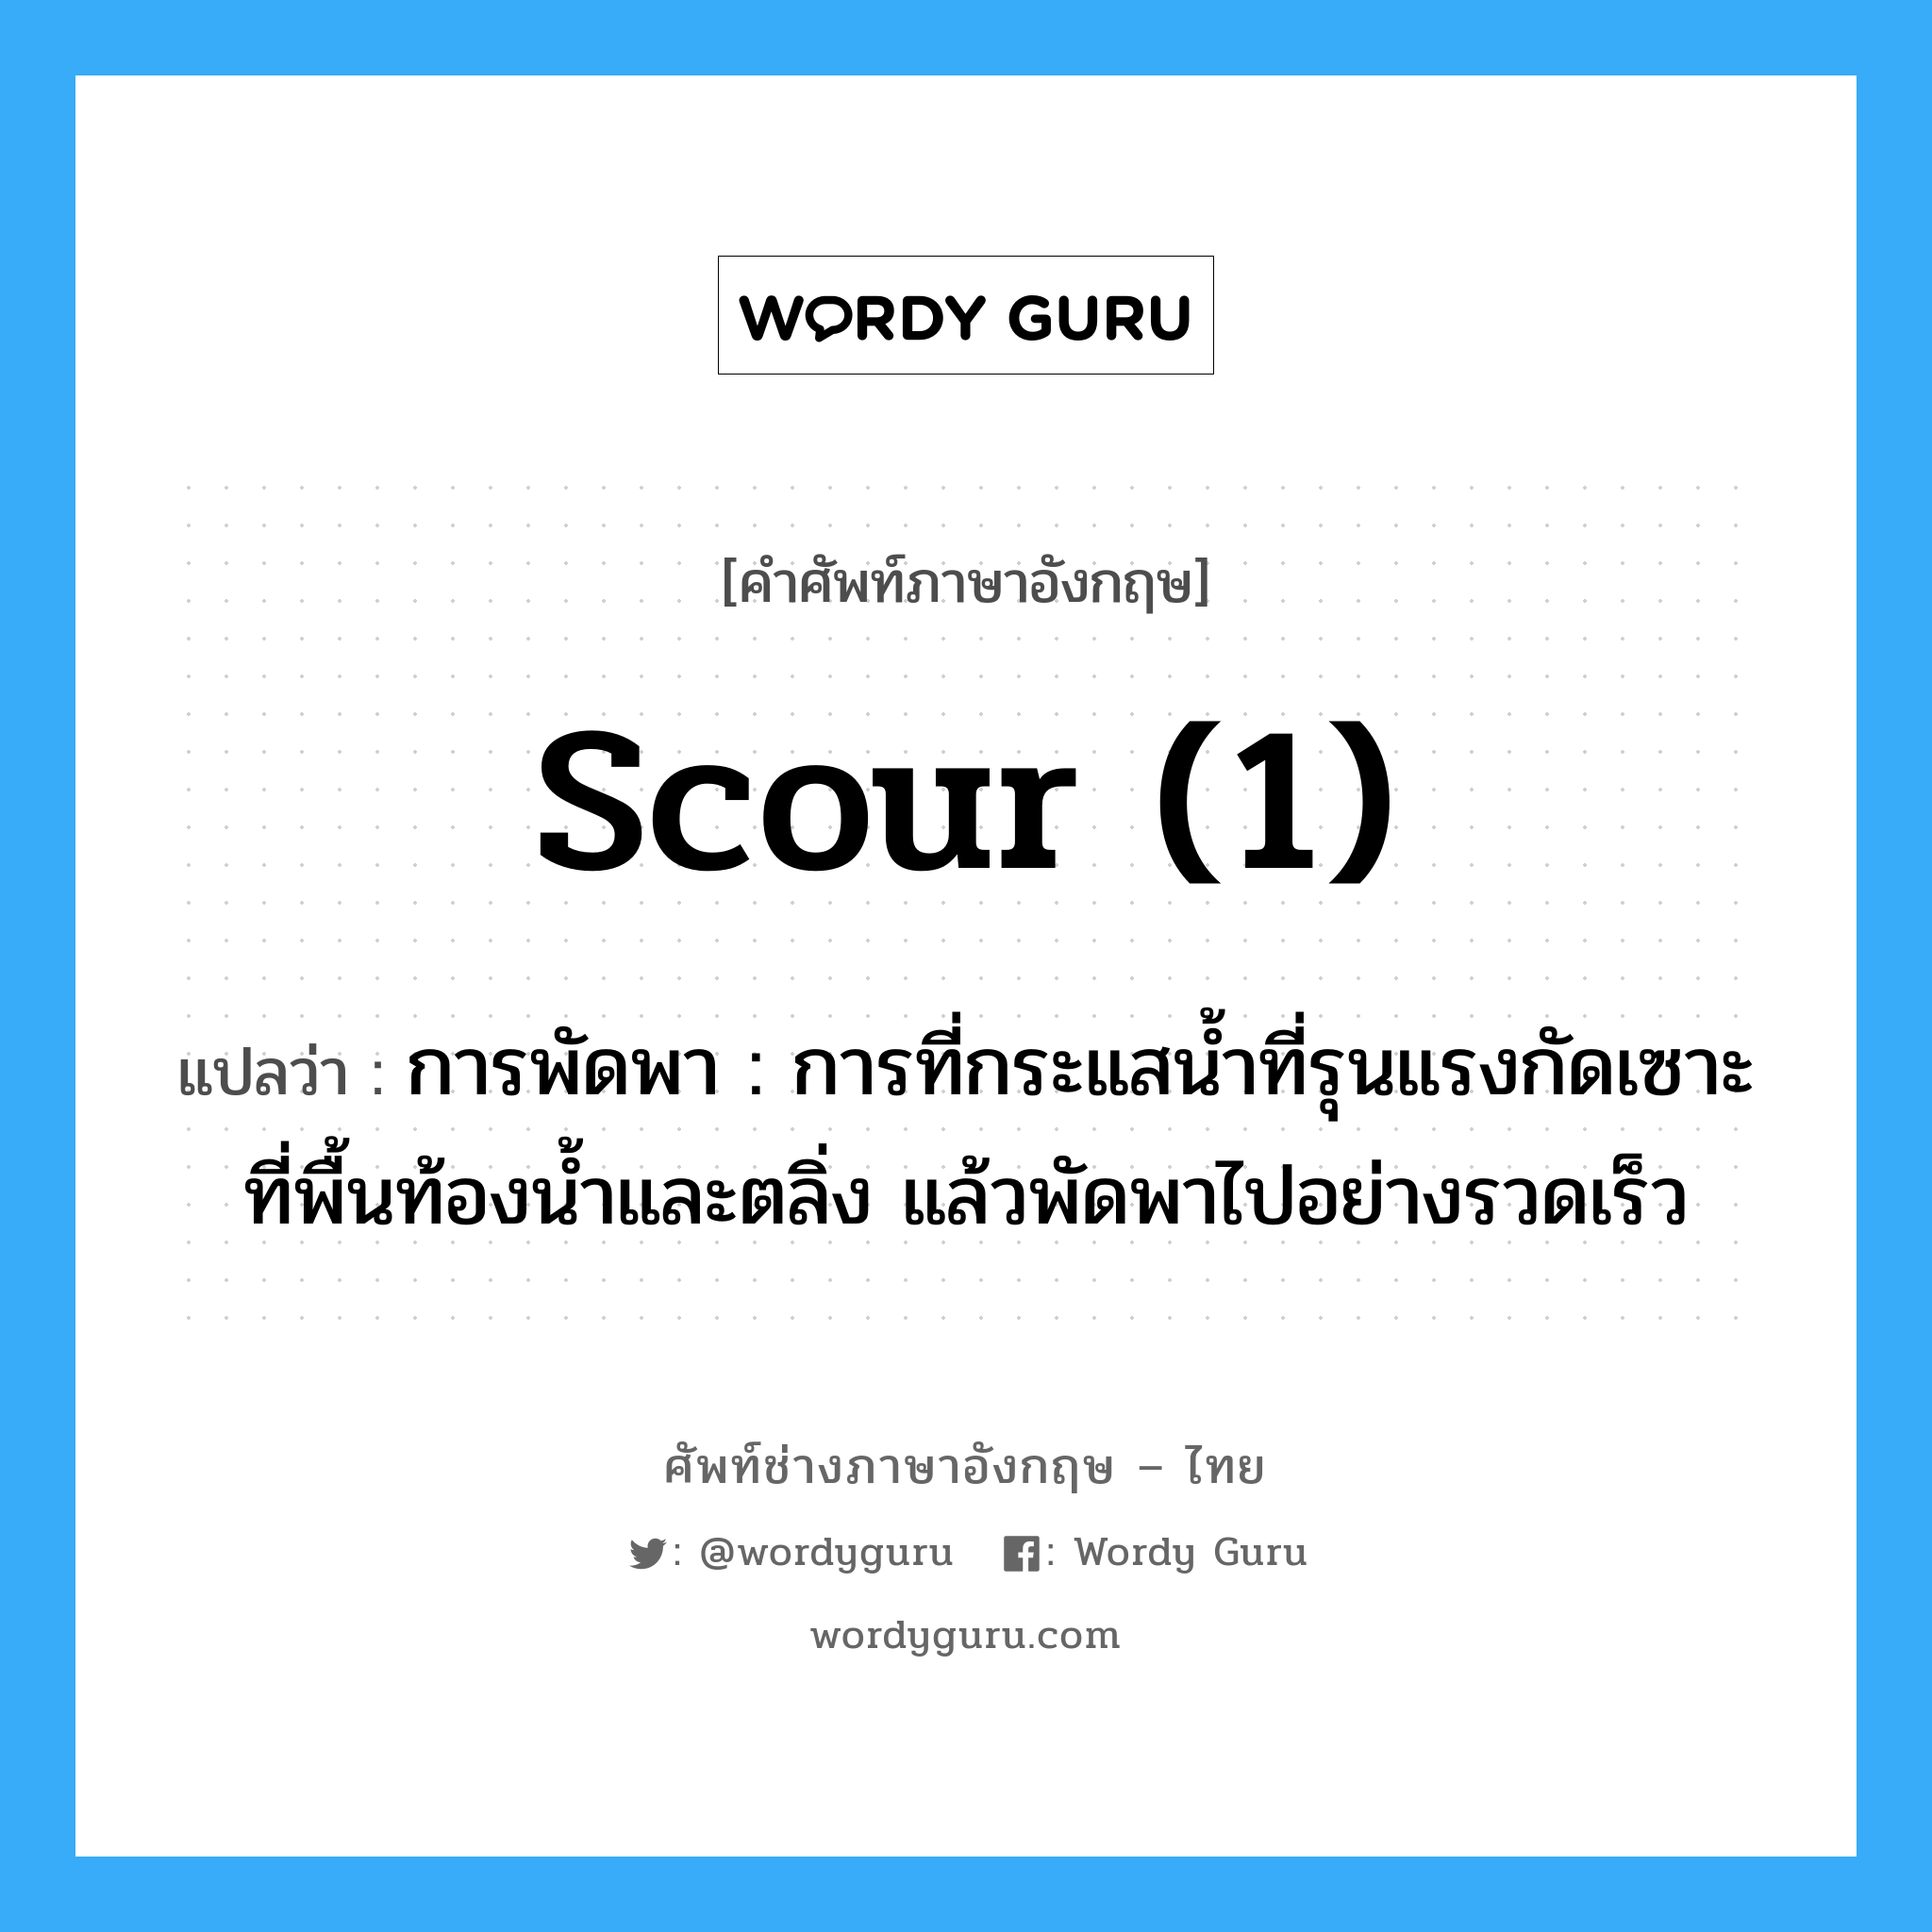 scour (1) แปลว่า?, คำศัพท์ช่างภาษาอังกฤษ - ไทย scour (1) คำศัพท์ภาษาอังกฤษ scour (1) แปลว่า การพัดพา : การที่กระแสน้ำที่รุนแรงกัดเซาะที่พื้นท้องน้ำและตลิ่ง แล้วพัดพาไปอย่างรวดเร็ว